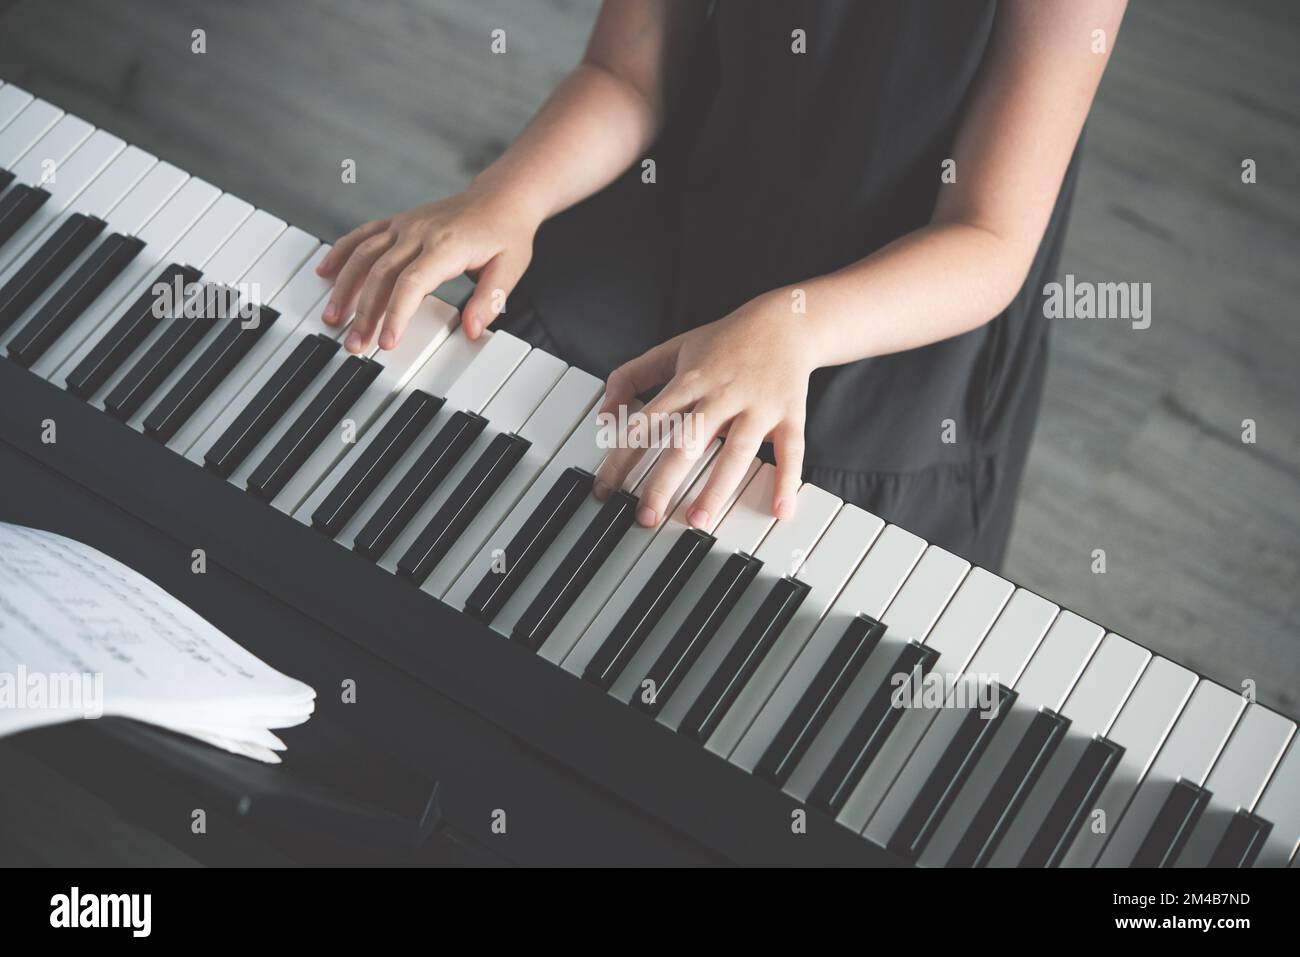 Le concept de développement des activités des enfants. Une fille dans une robe grise joue un piano électronique. Sans face. Vue de dessus et teinte de l'image Banque D'Images